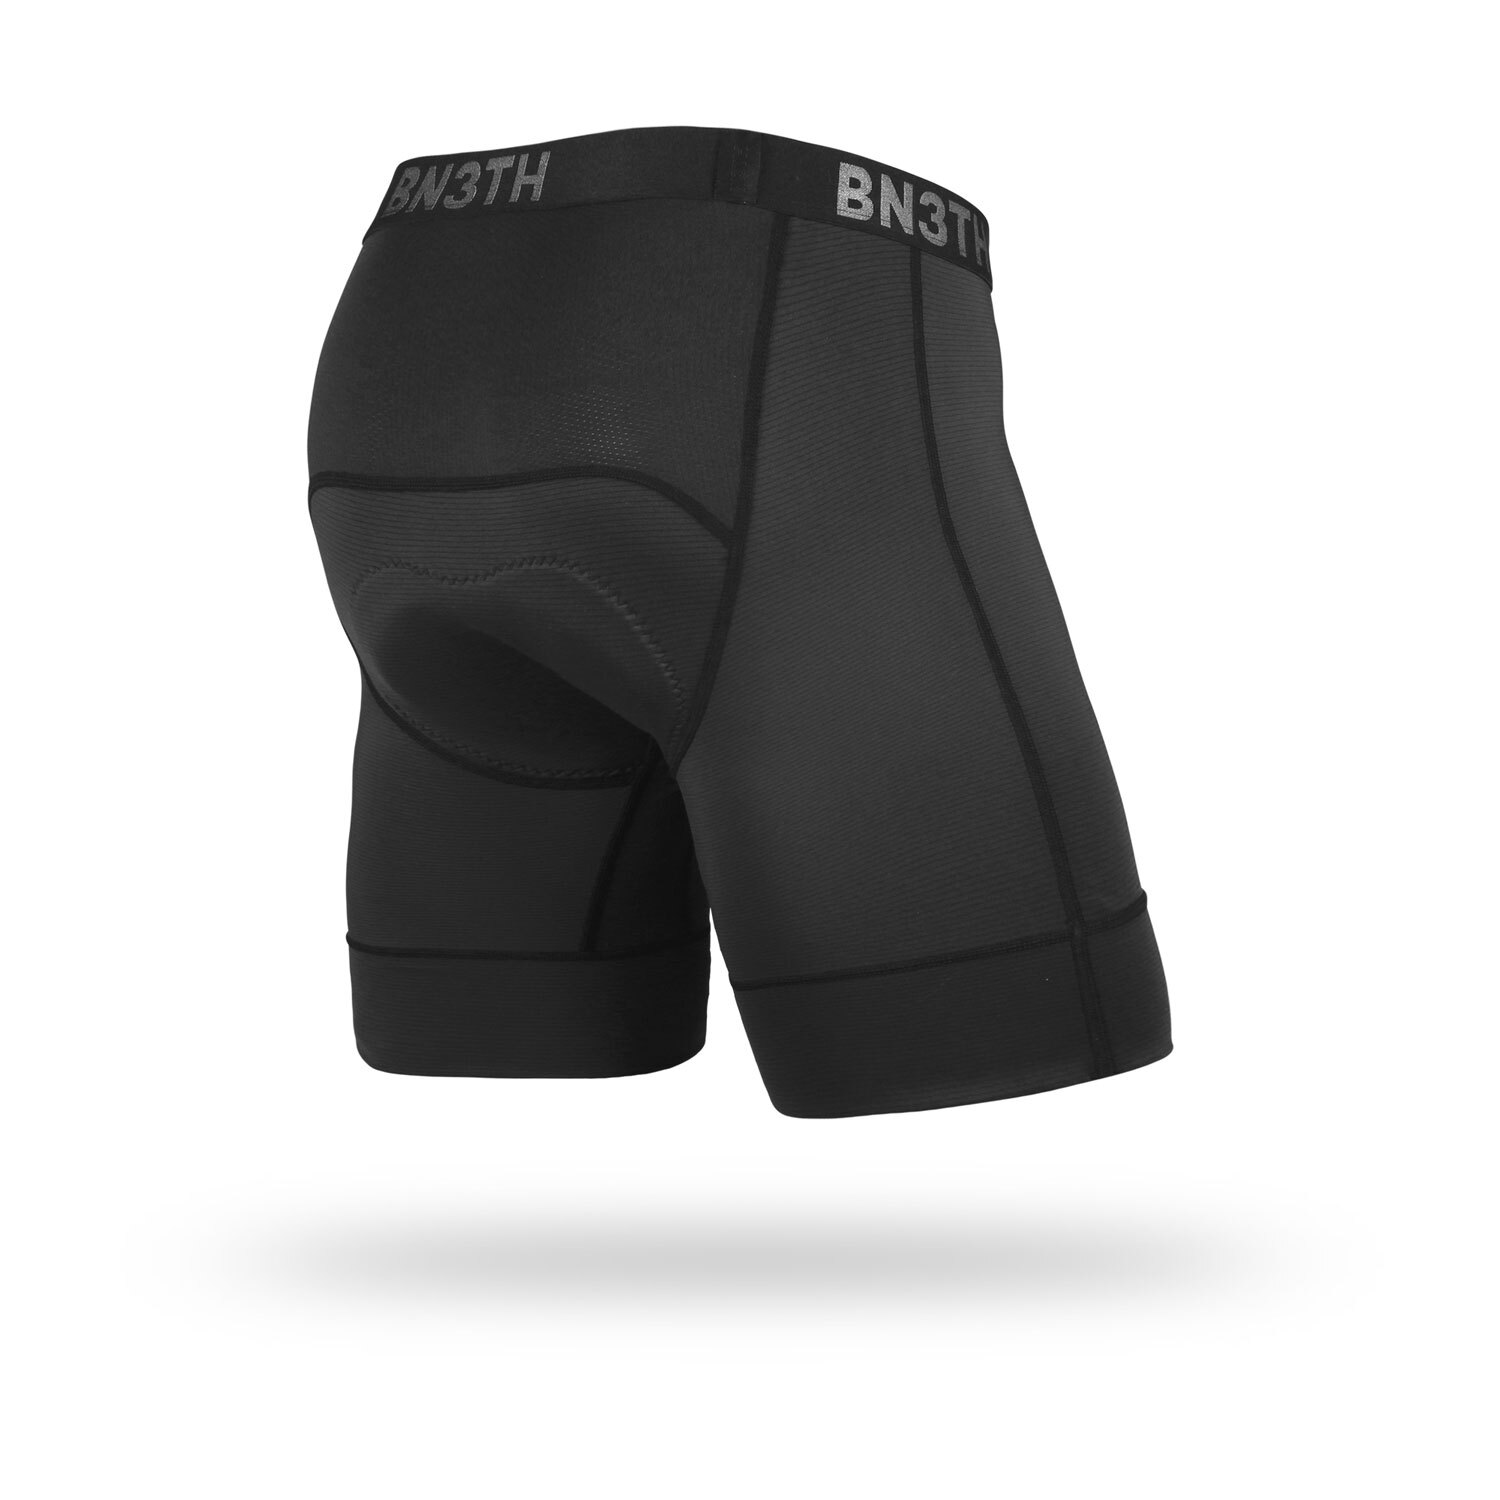 BN3TH - North Shore Chamois - Bike Chamois/Biking Underwear